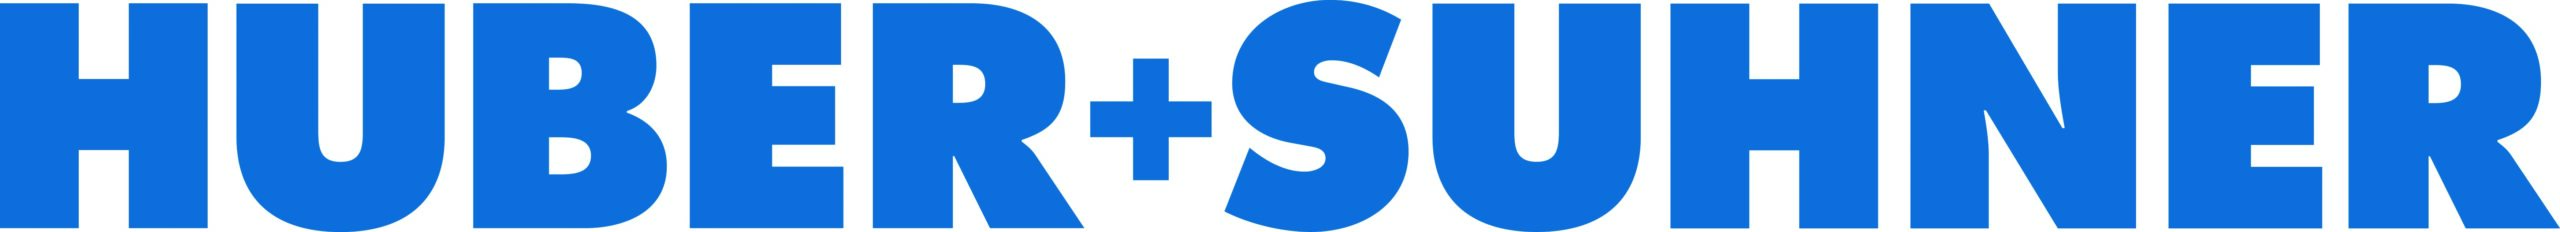 Huber & Suhner New Logo